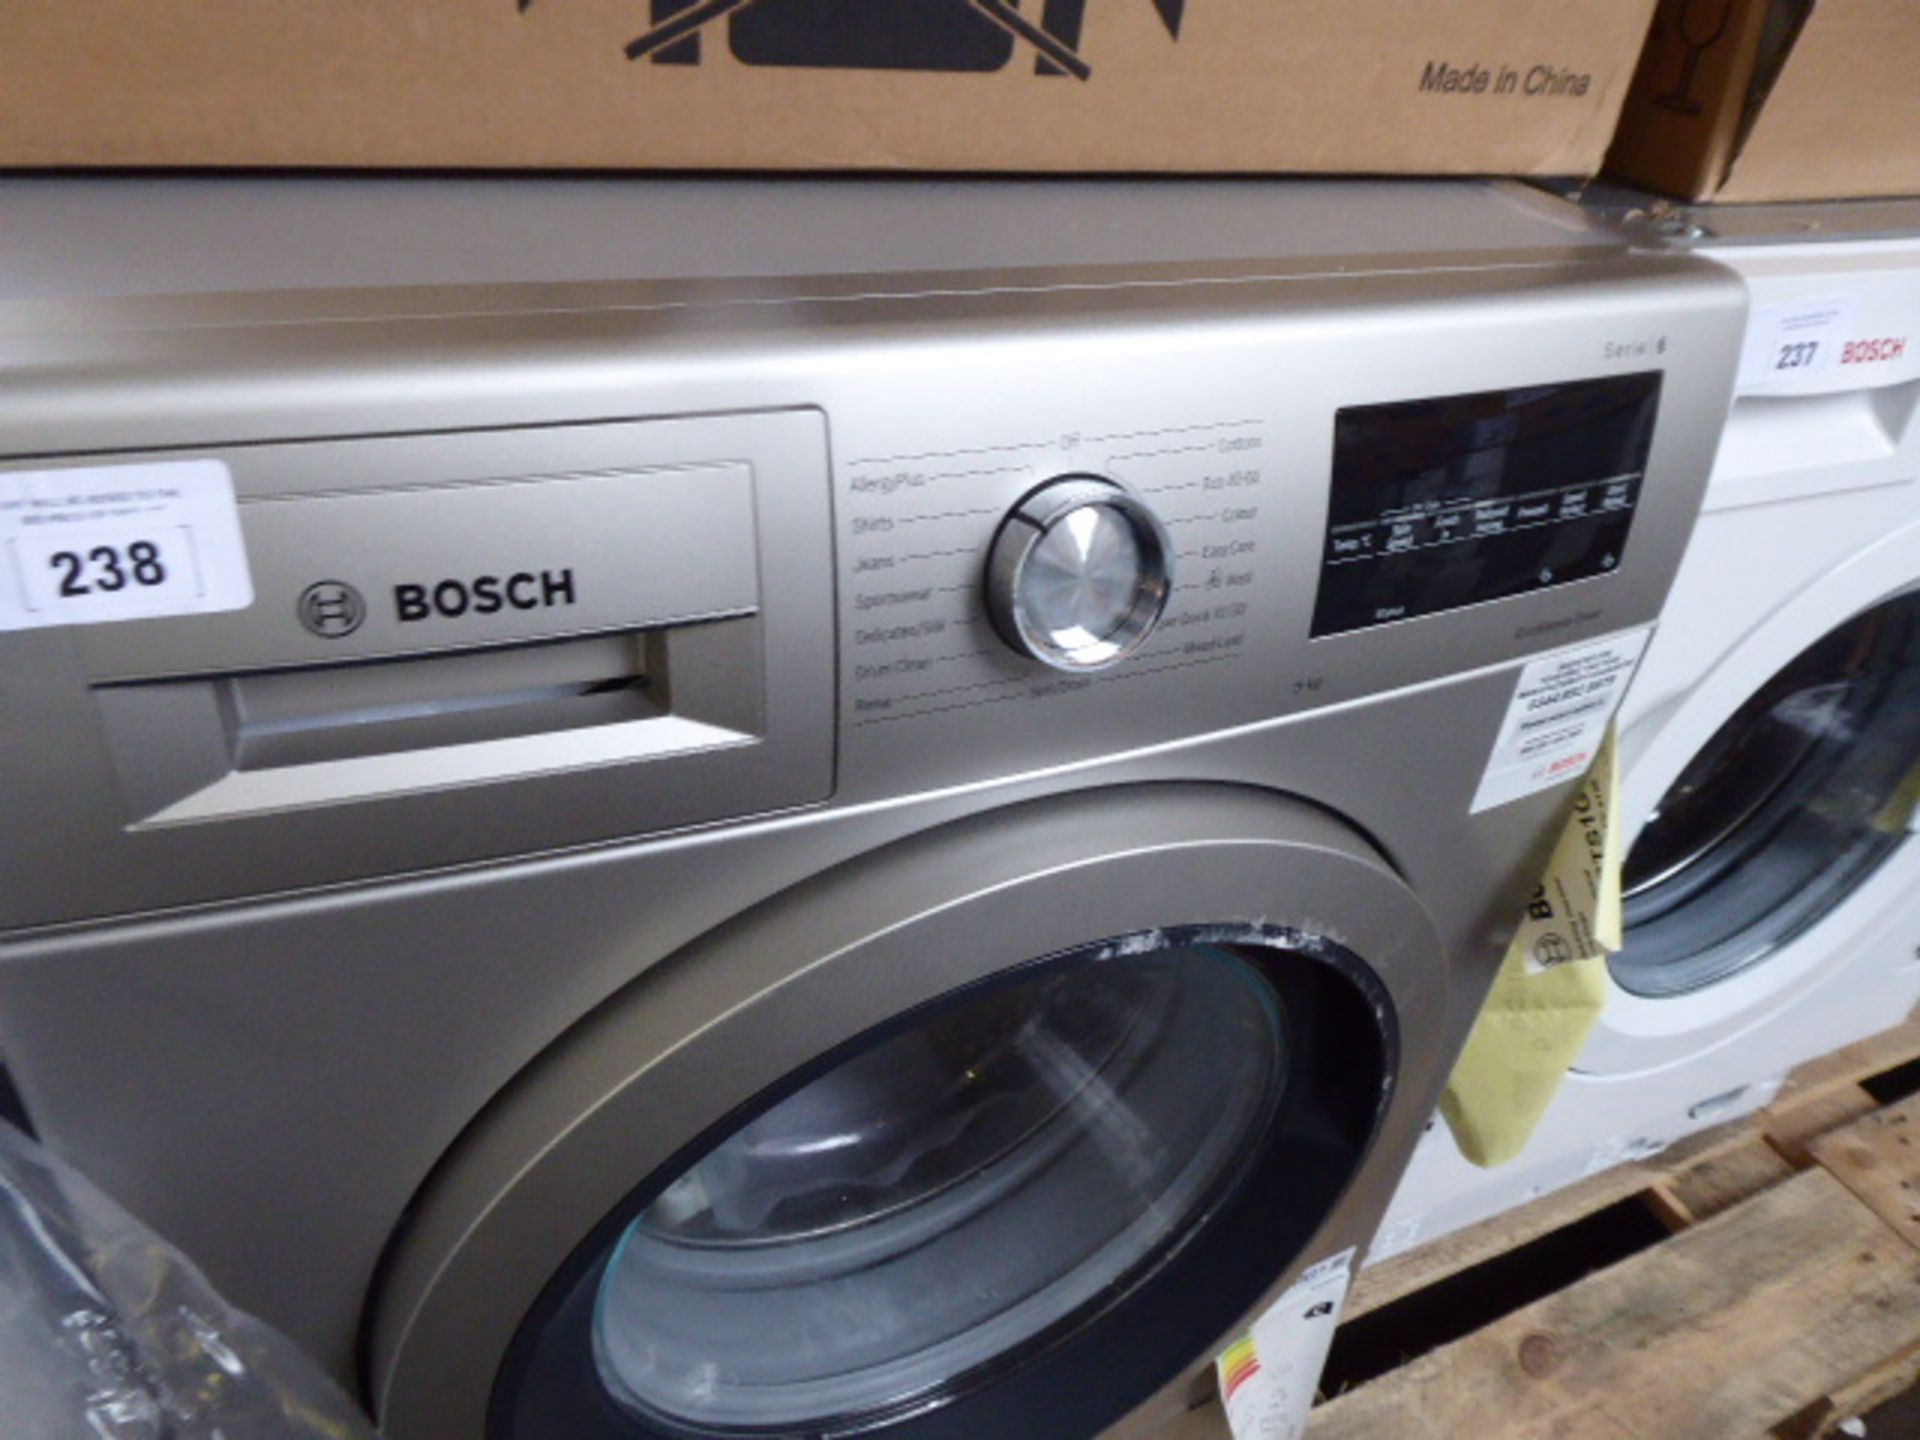 WAU28TS1GBB Bosch Washing machine - Image 2 of 3